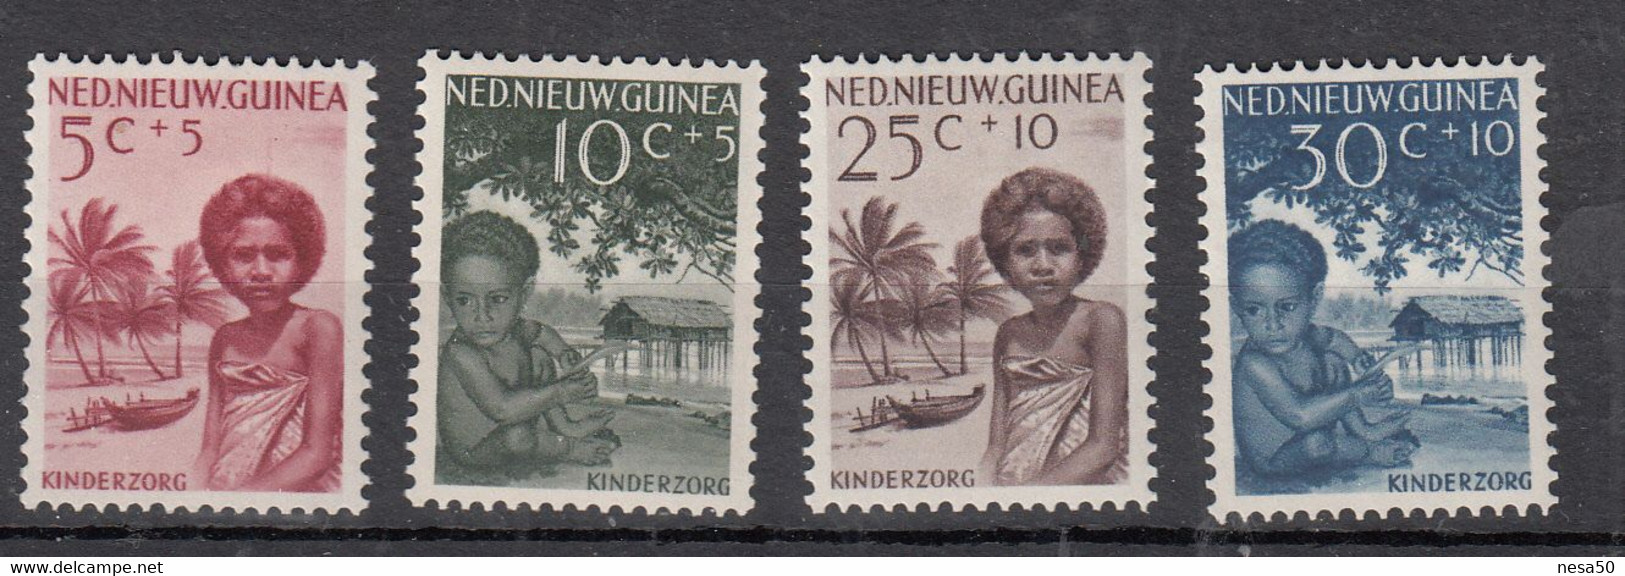 Nederland Nieuw-Guinea 1957 Mi Nr 45 - 48,  Kinderpostzegels, Kinderhulp, Postfris Met Plakker - Netherlands New Guinea